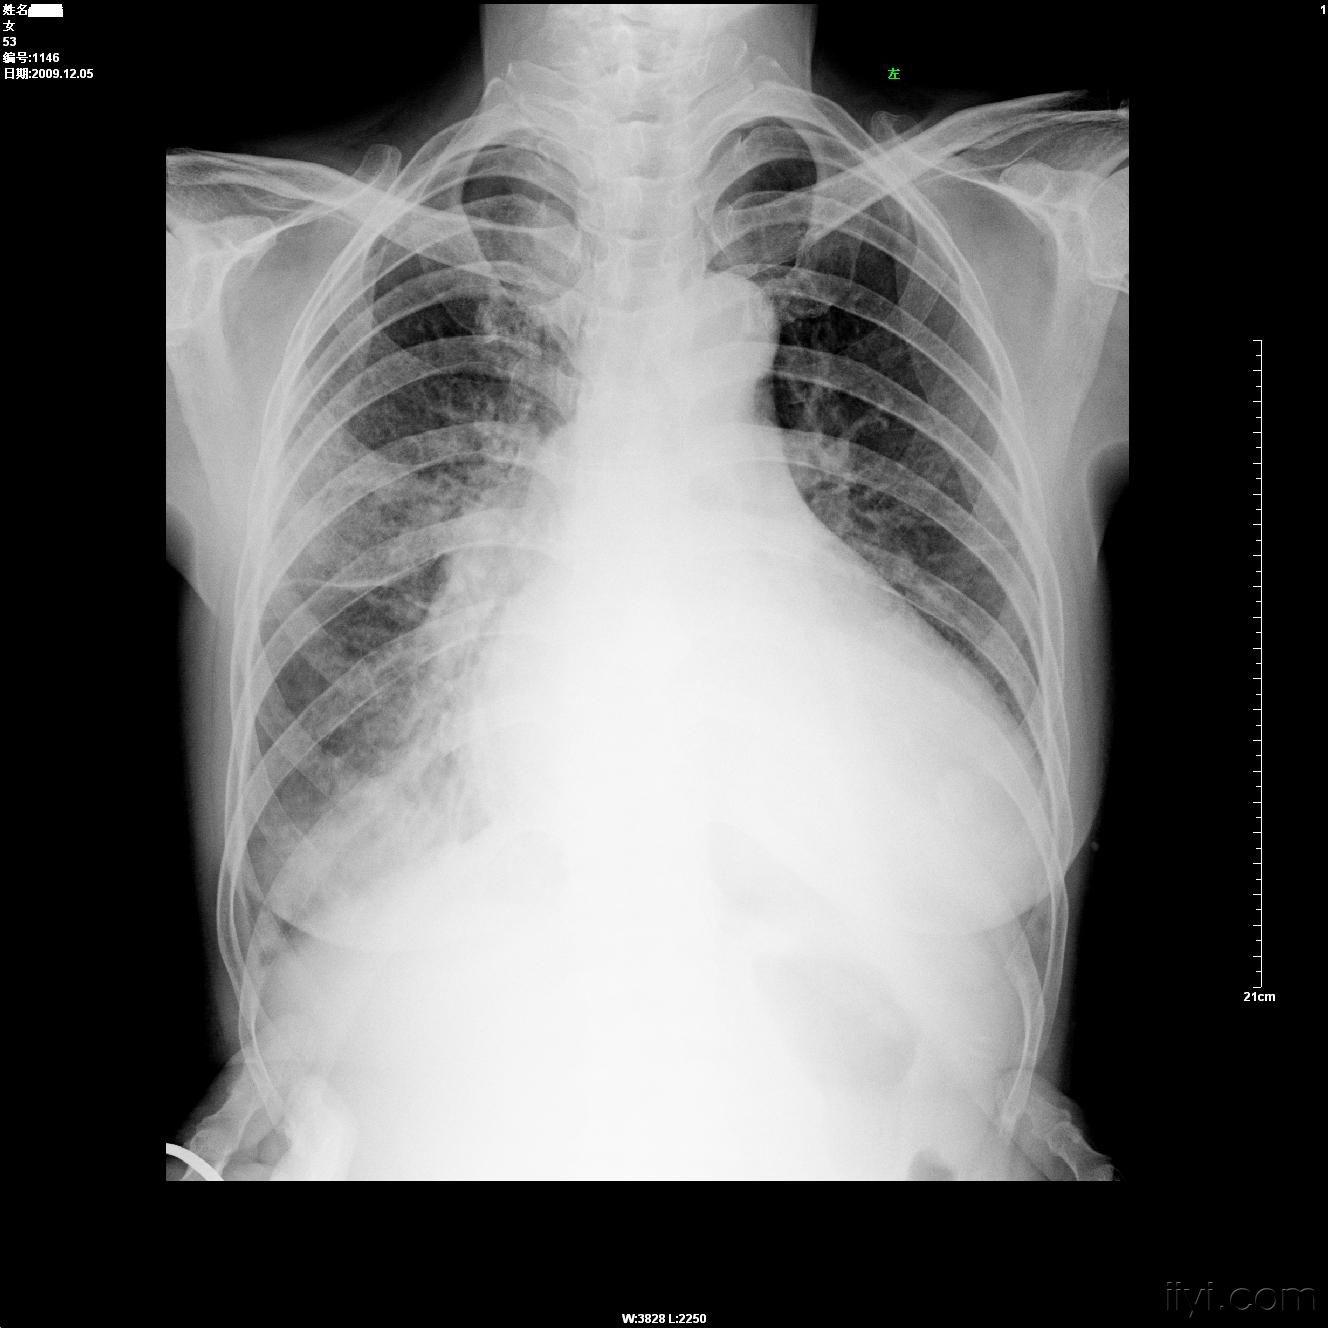 很明显的这个患者从片子上看是:肺淤血,肺水肿,右侧胸腔少量积液可能